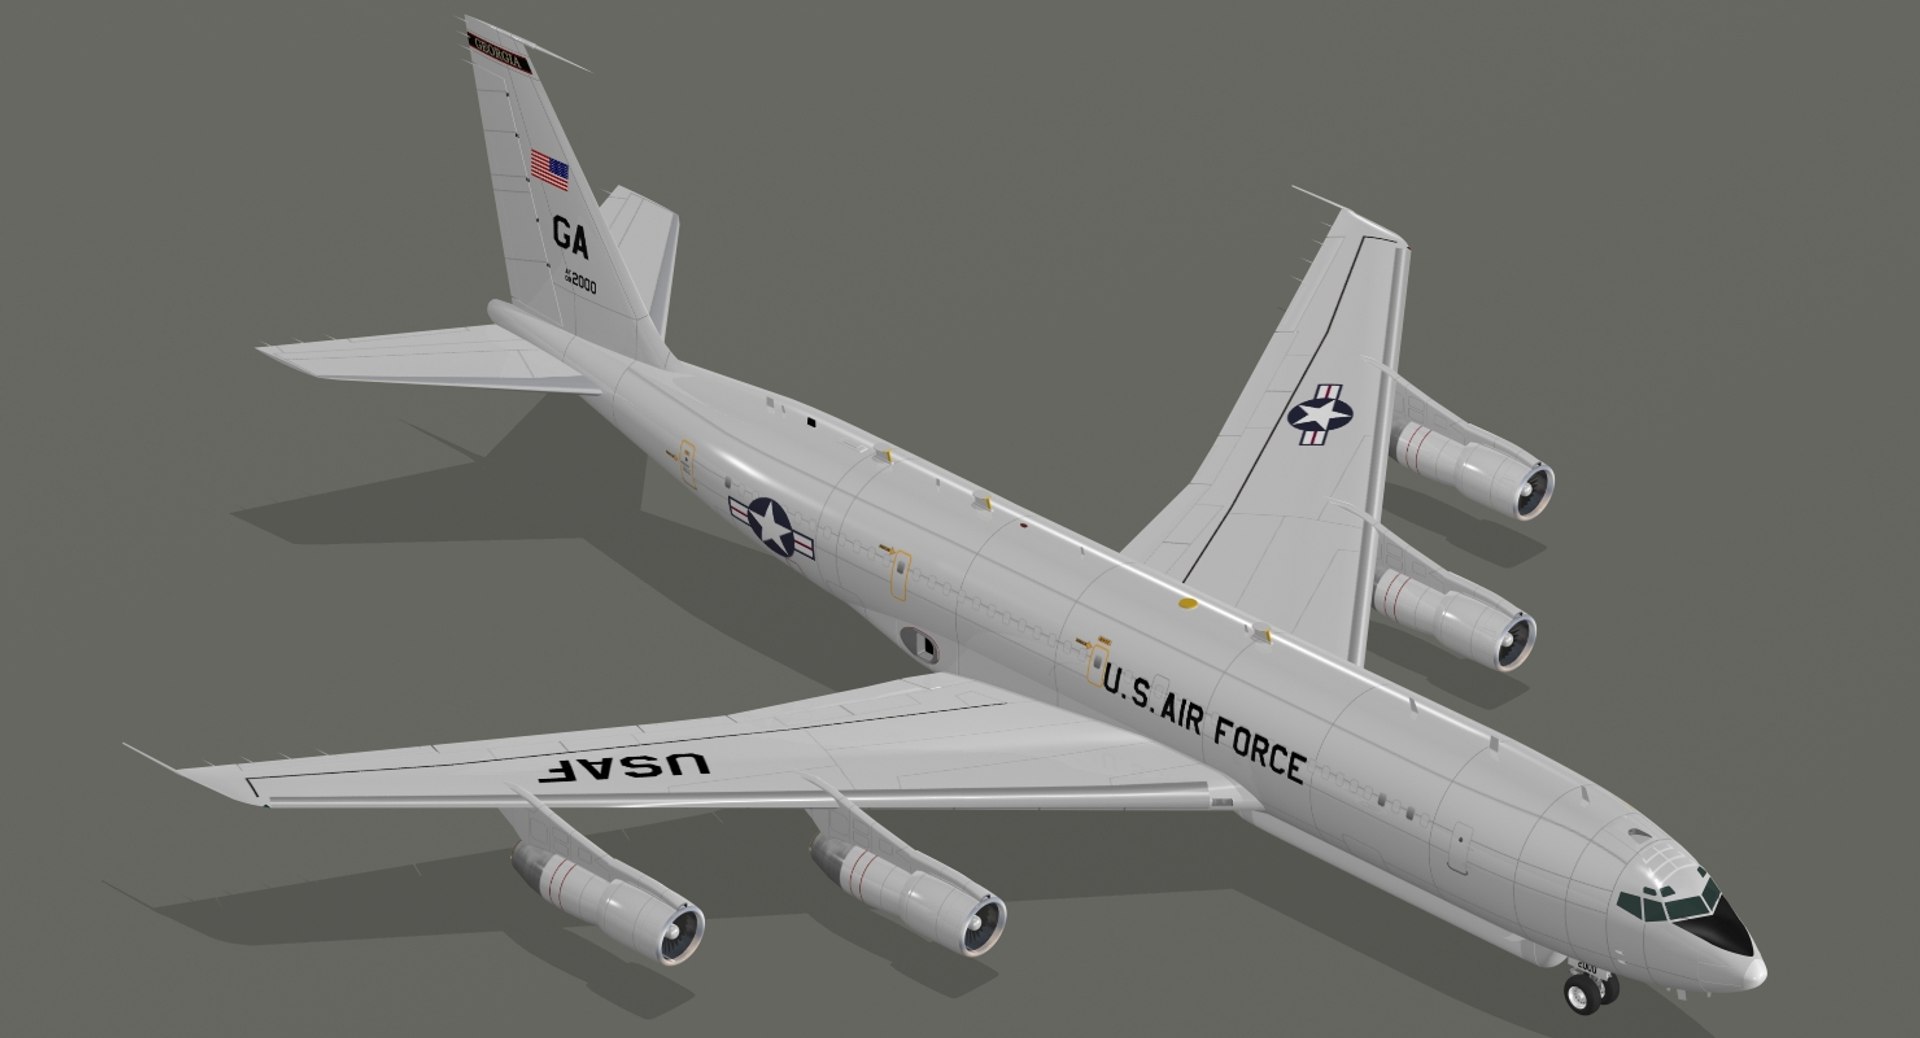 Northrop Grumman E-8 Joint STARS - Wikipedia